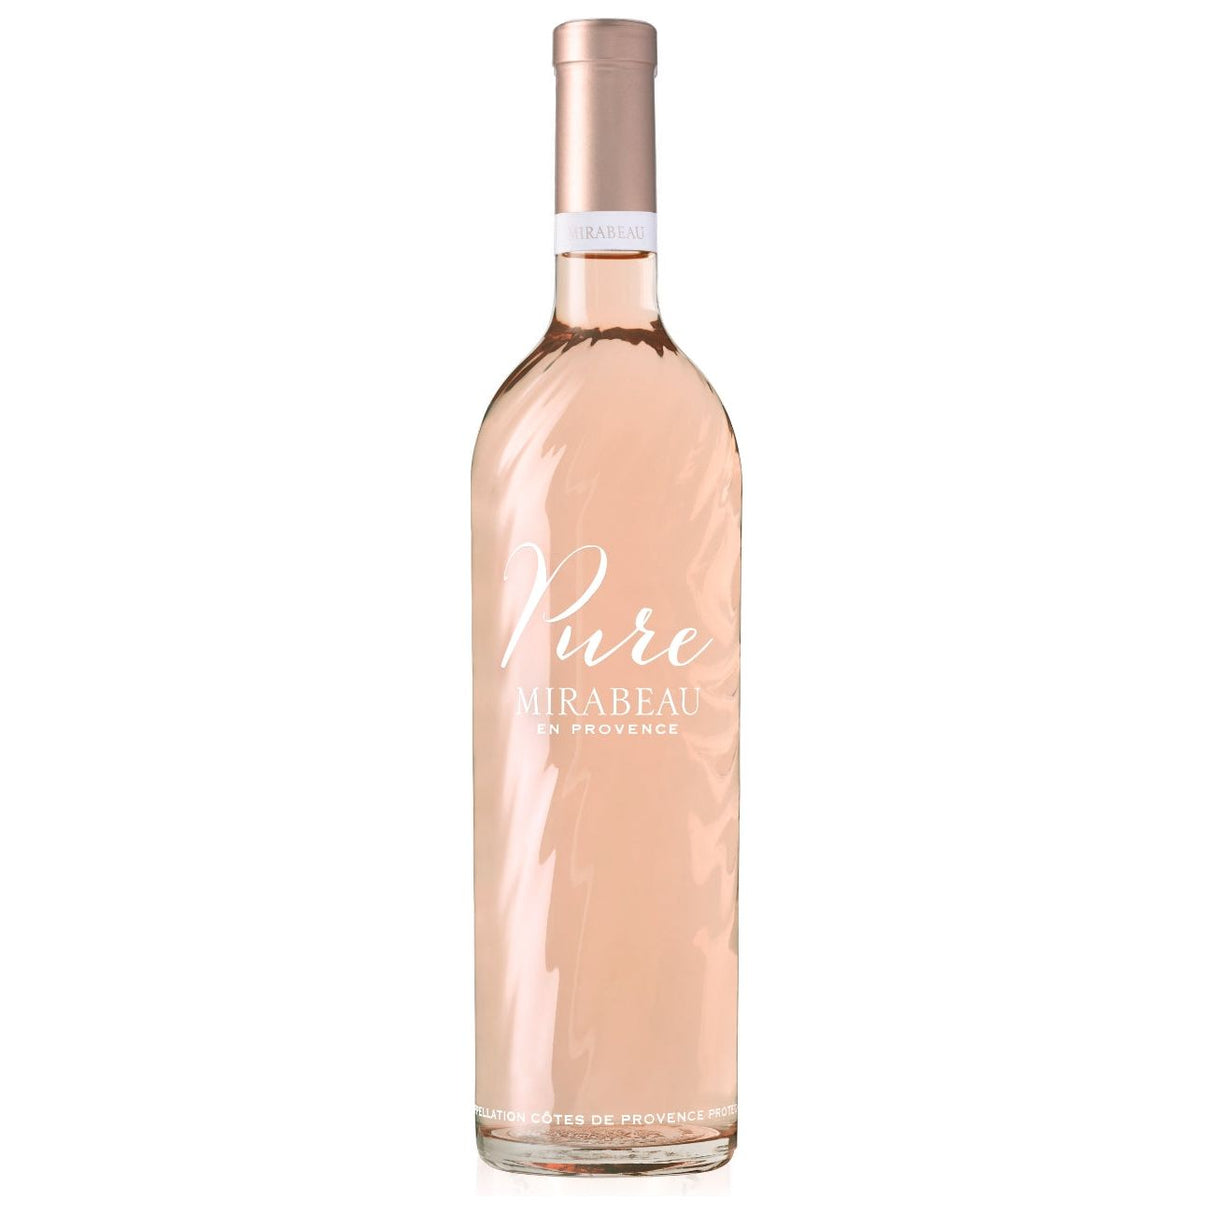 Mirabeau Pure Cotes de Provence 2020 (12 bottles)